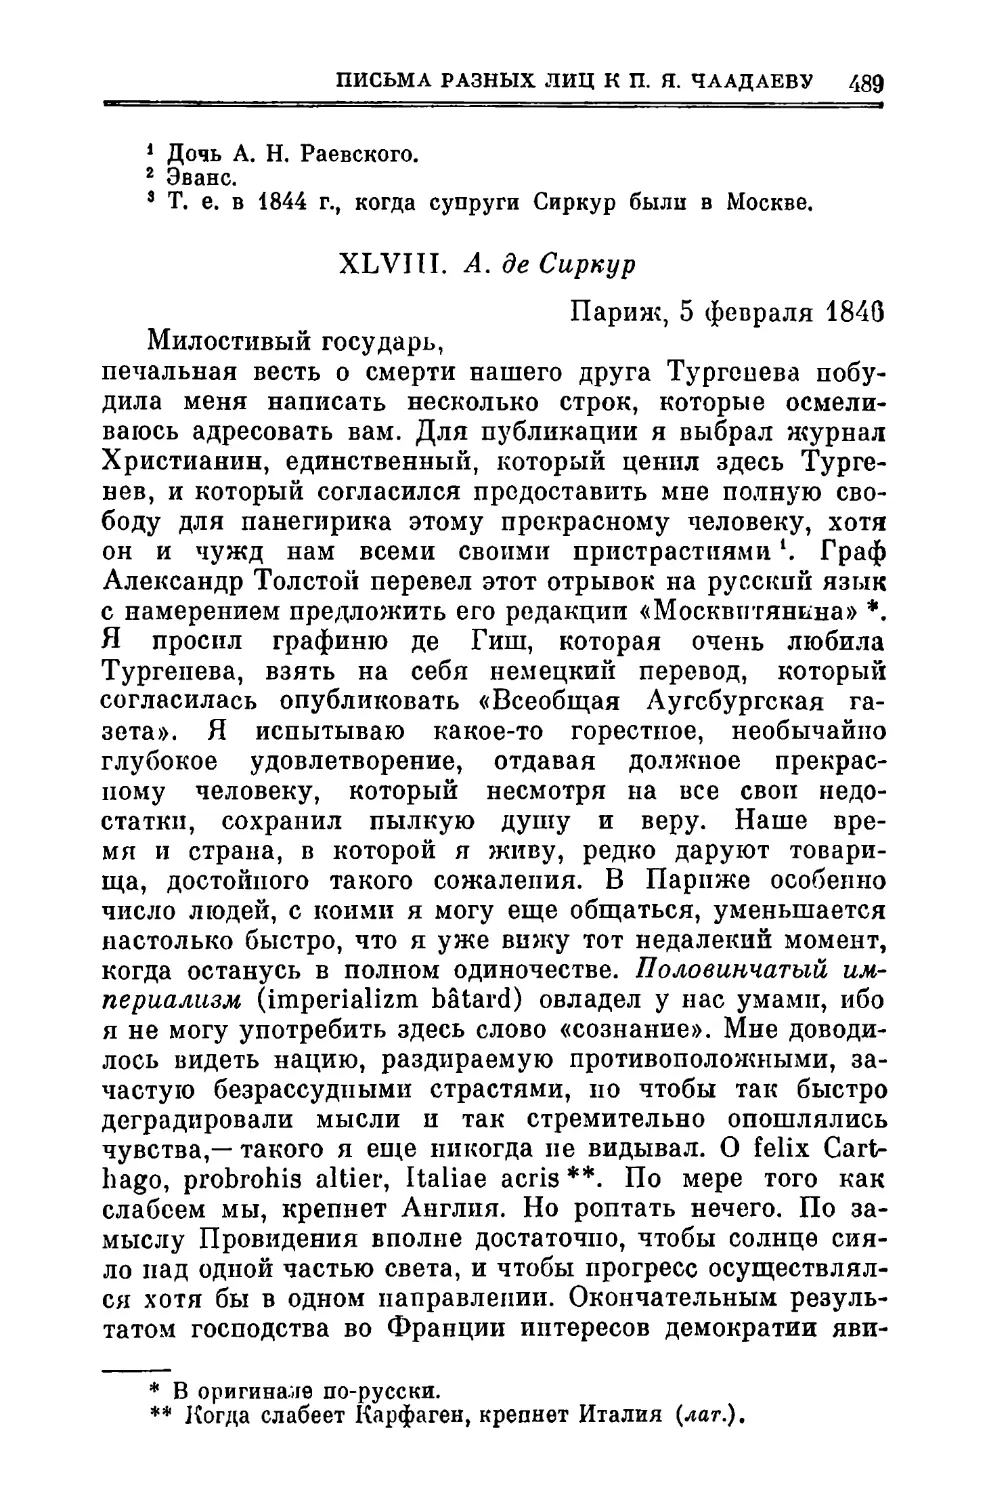 XLVIII. Сиркур А.де. 5.ІІ.1846